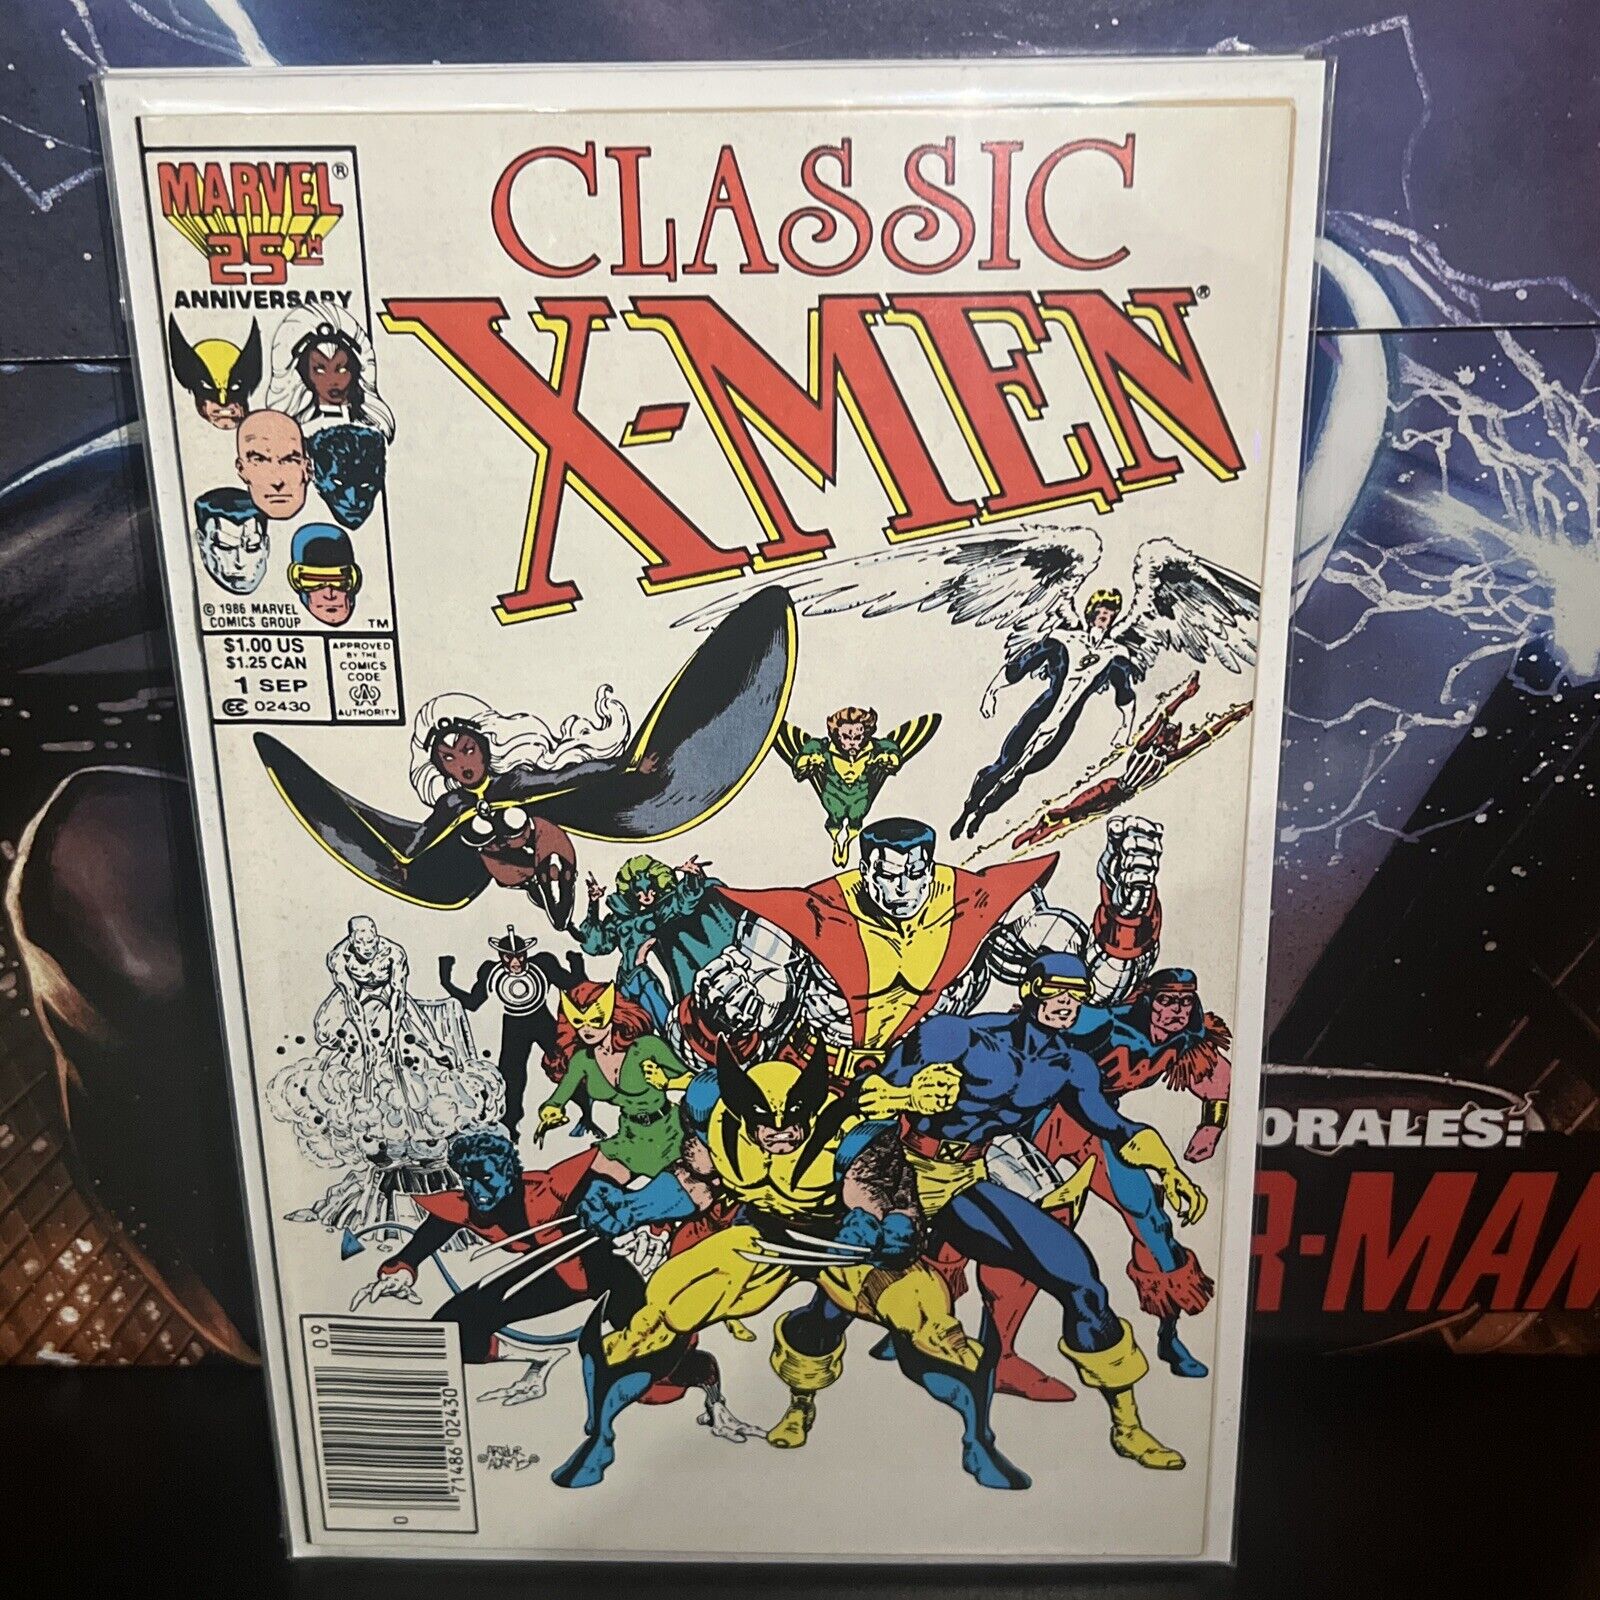 Classic X-Men # 1 Marvel Comics 1986 Art Adams Chris Claremont. NM+